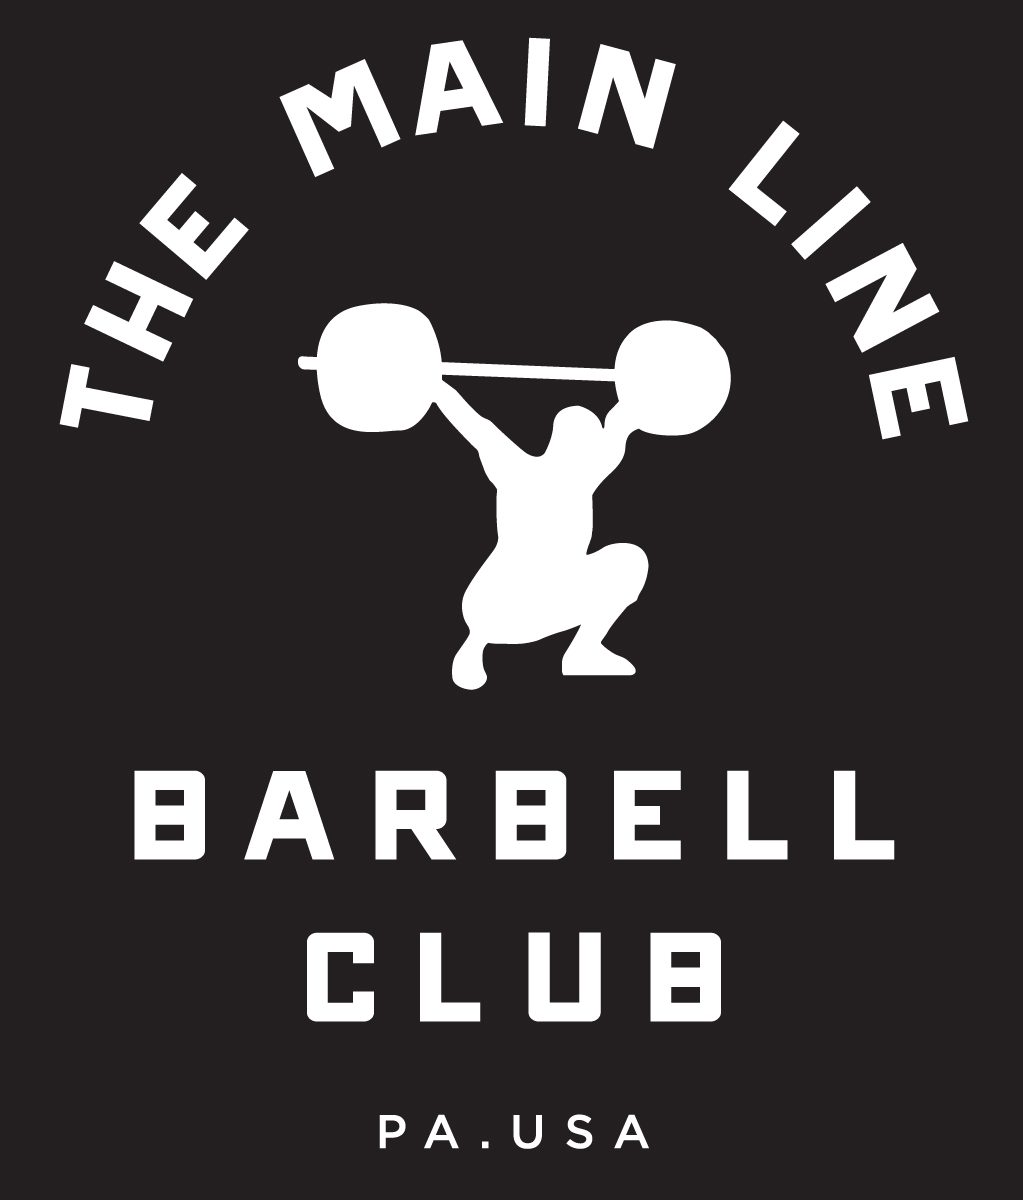 Week of 6.20.16 Barbell Club